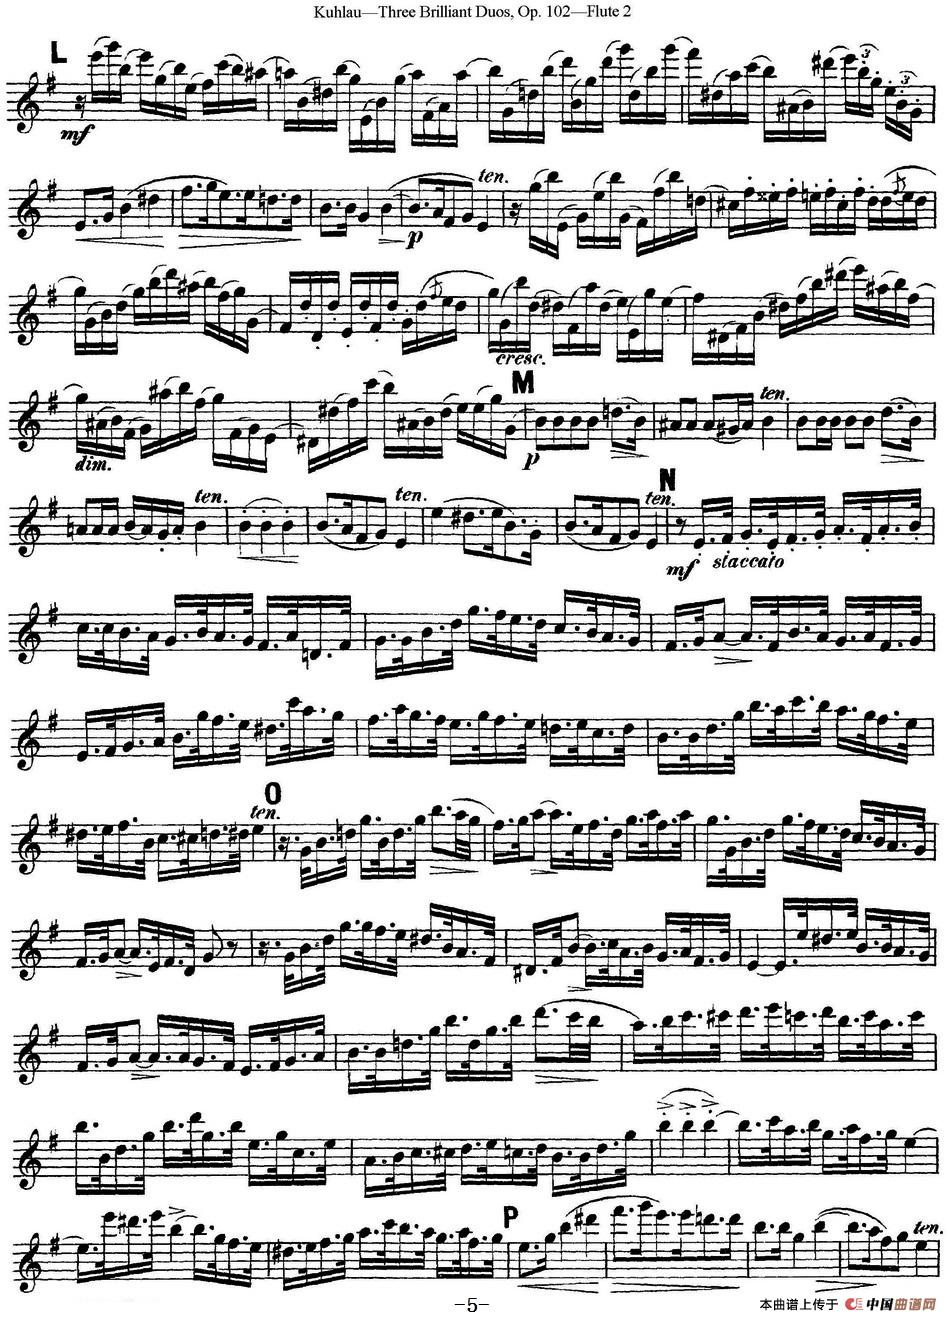 库劳长笛二重奏练习三段OP.102——Flute 2（NO.2）